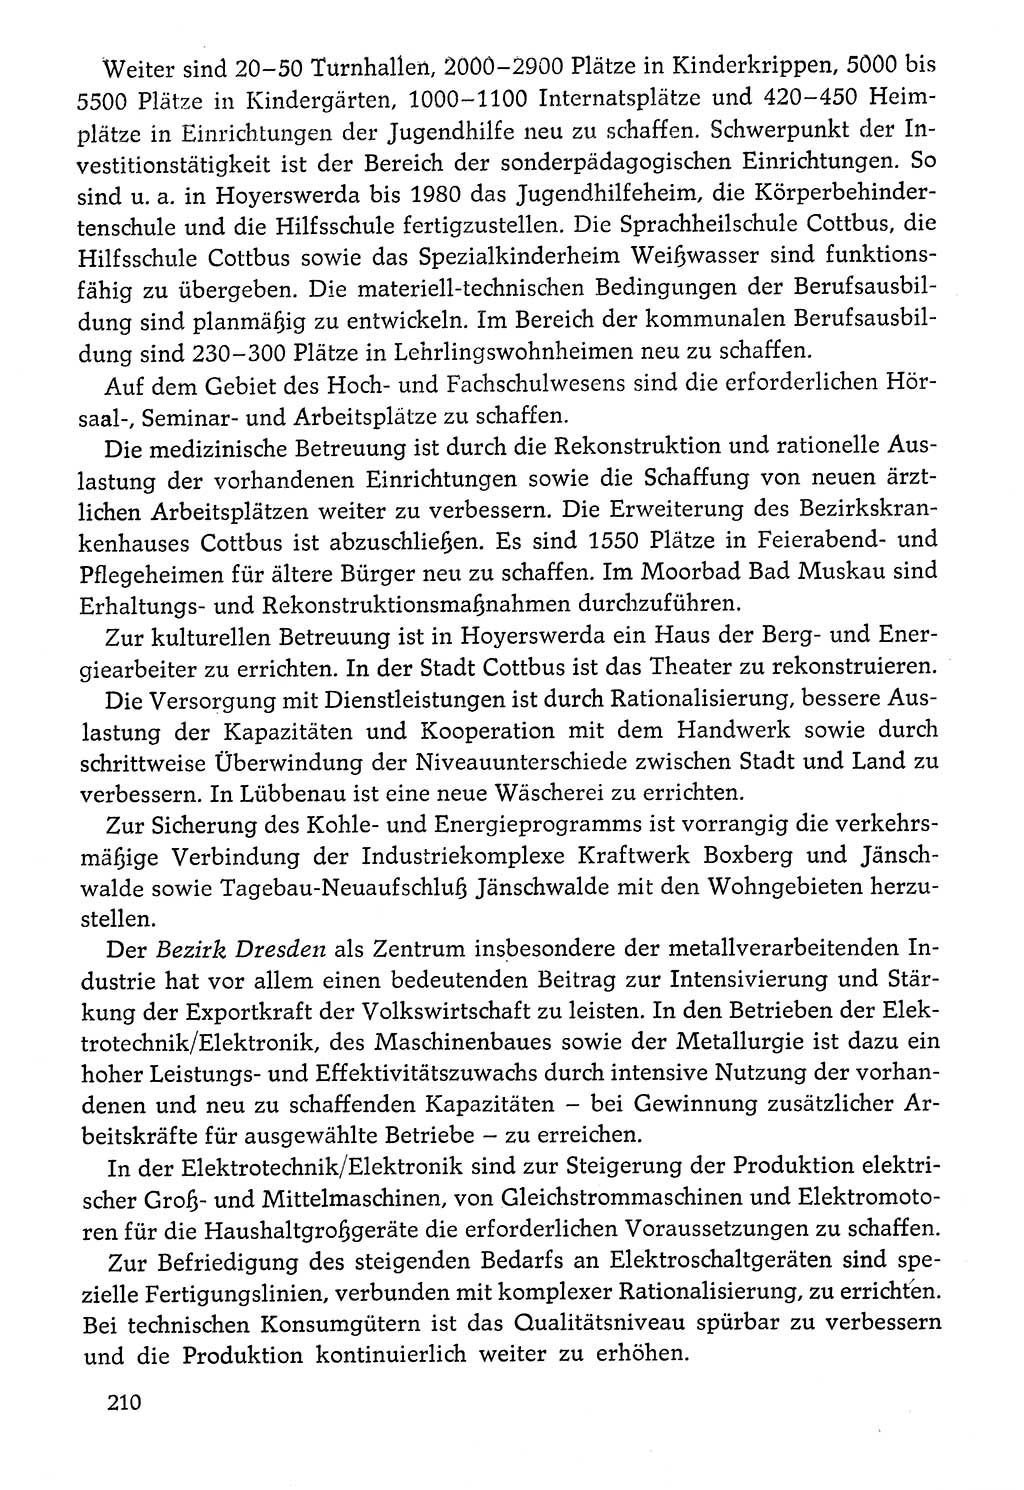 Dokumente der Sozialistischen Einheitspartei Deutschlands (SED) [Deutsche Demokratische Republik (DDR)] 1976-1977, Seite 210 (Dok. SED DDR 1976-1977, S. 210)